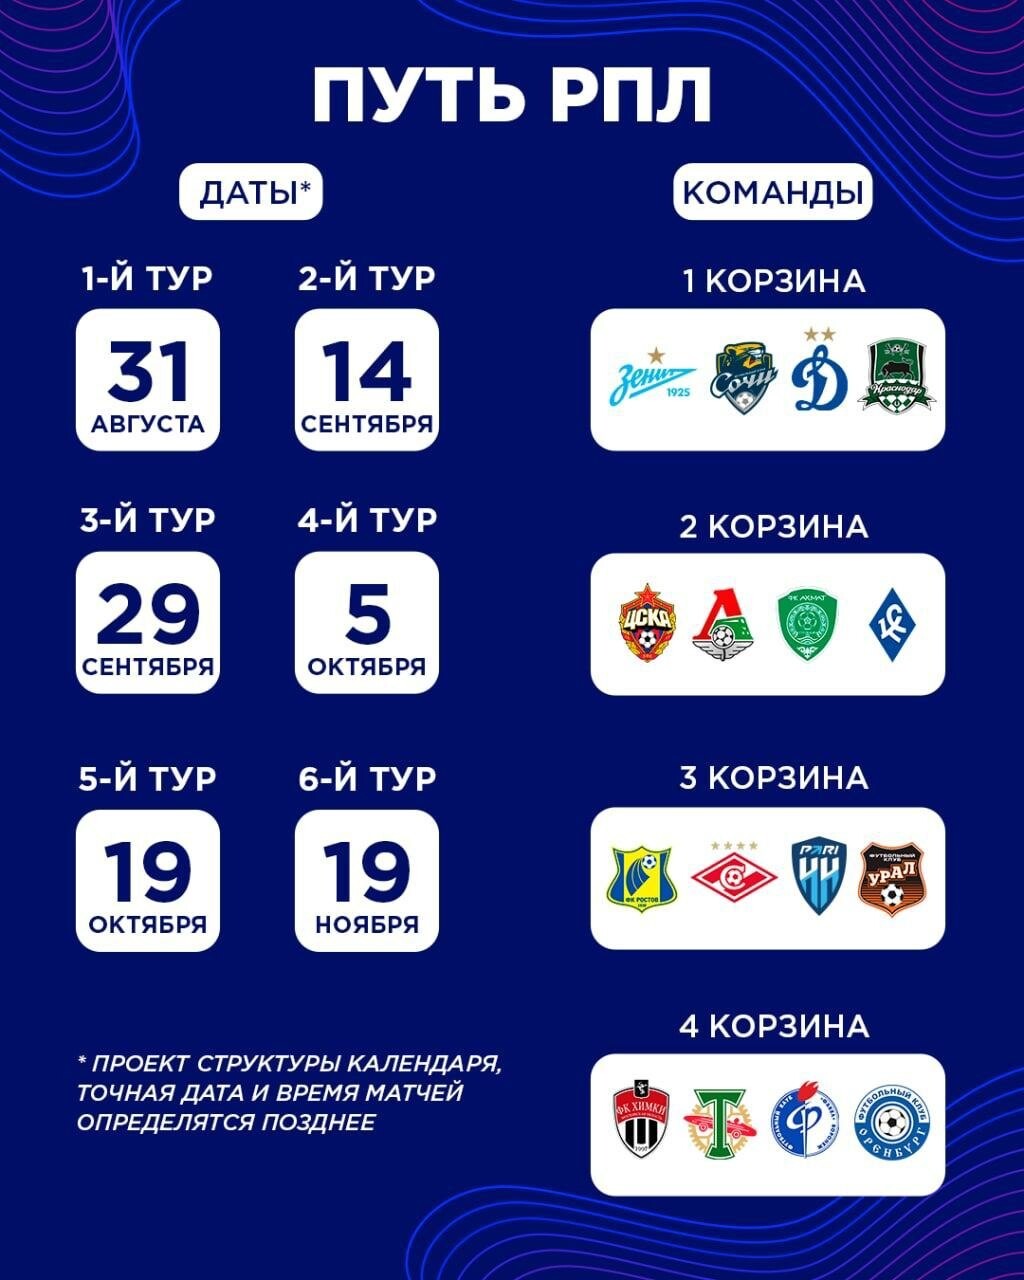 Расписание игр фонбет кубка россии по футболу